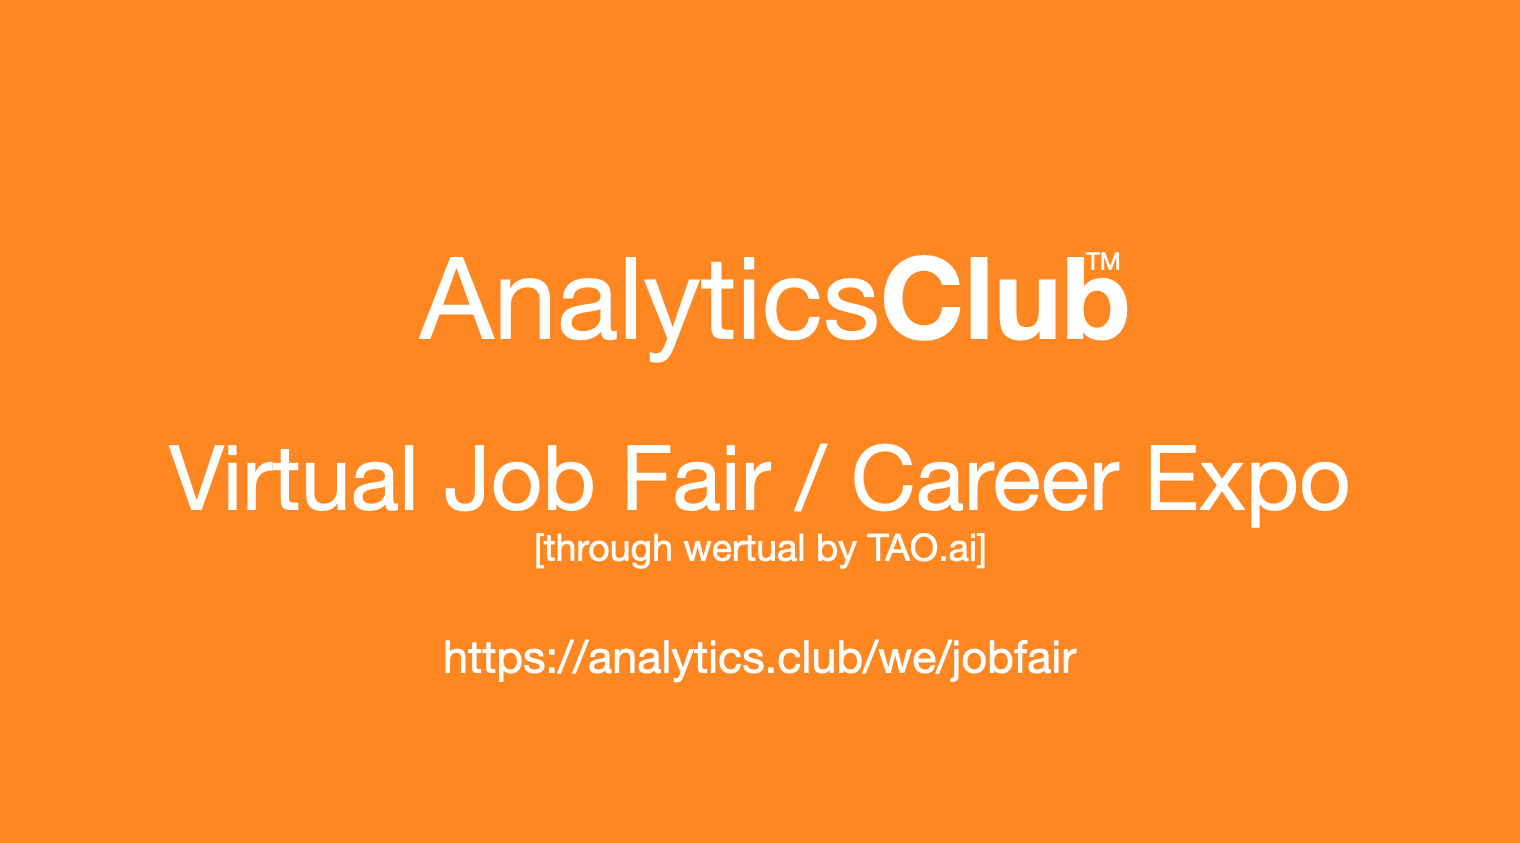 #AnalyticsClub Virtual Job Fair / Career Expo Event #Detroit